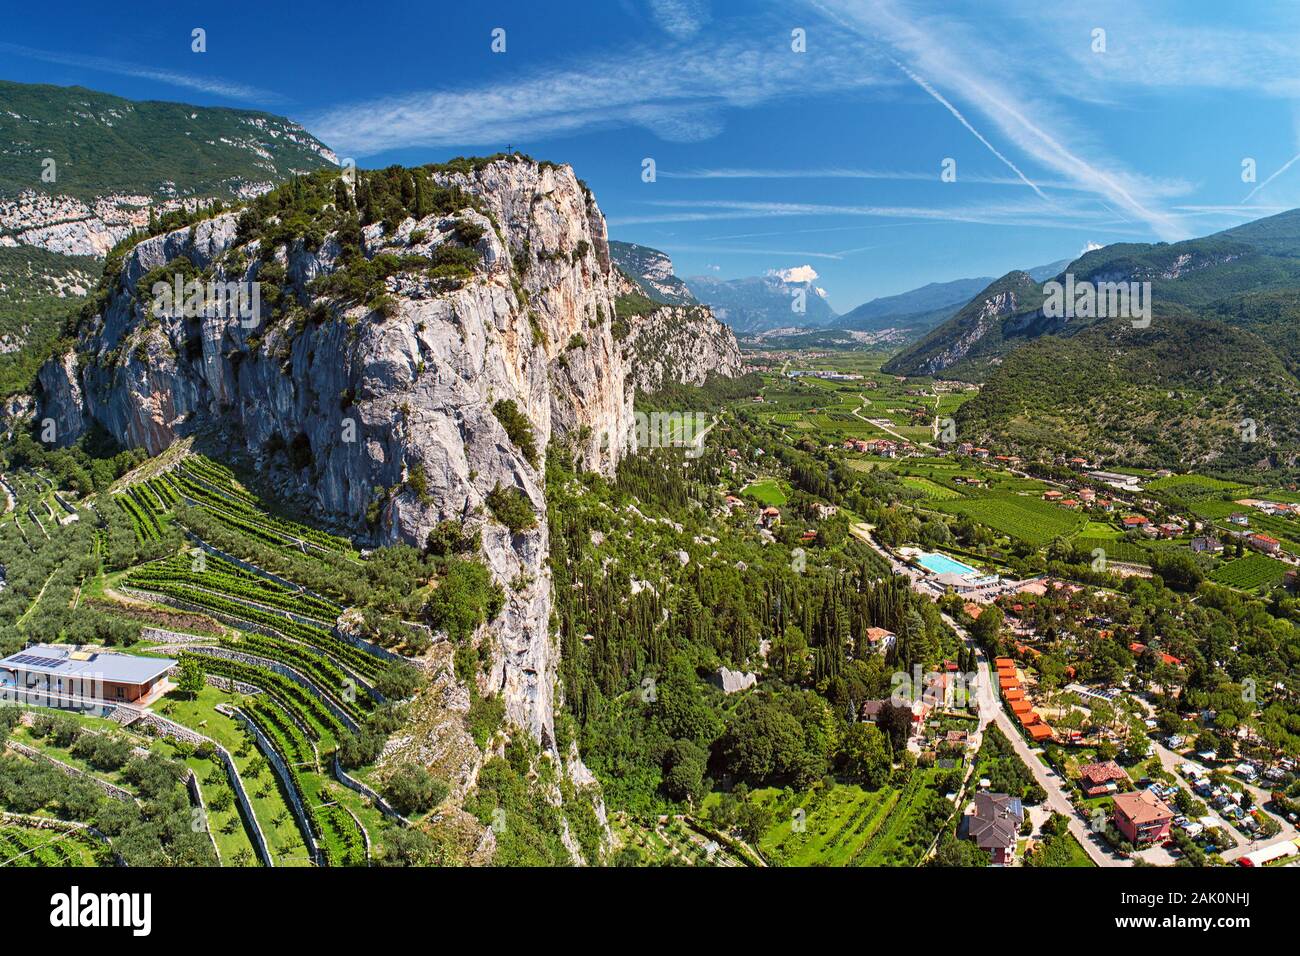 Paysage - vallée avec village parmi les montagnes, haute montagne avec vignobles, vue du château d'Arco (Castello di Arco) près du lac Lago di Garda, Italie Banque D'Images